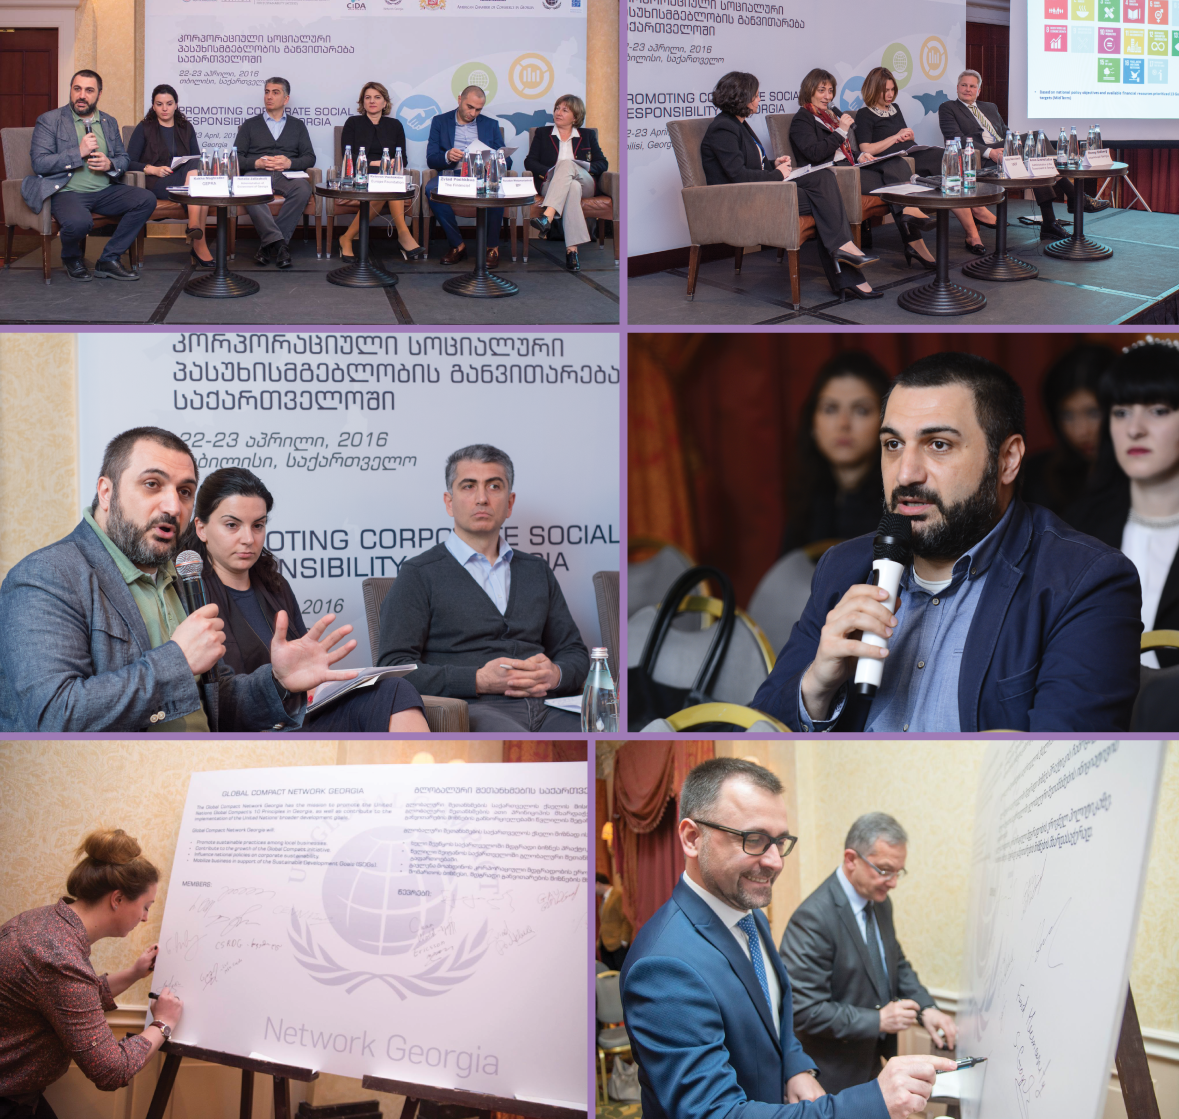 კონფერენცია საქართველოში კორპორაციული სოციალური პასუხისმგებლობის განვითარების თემაზე